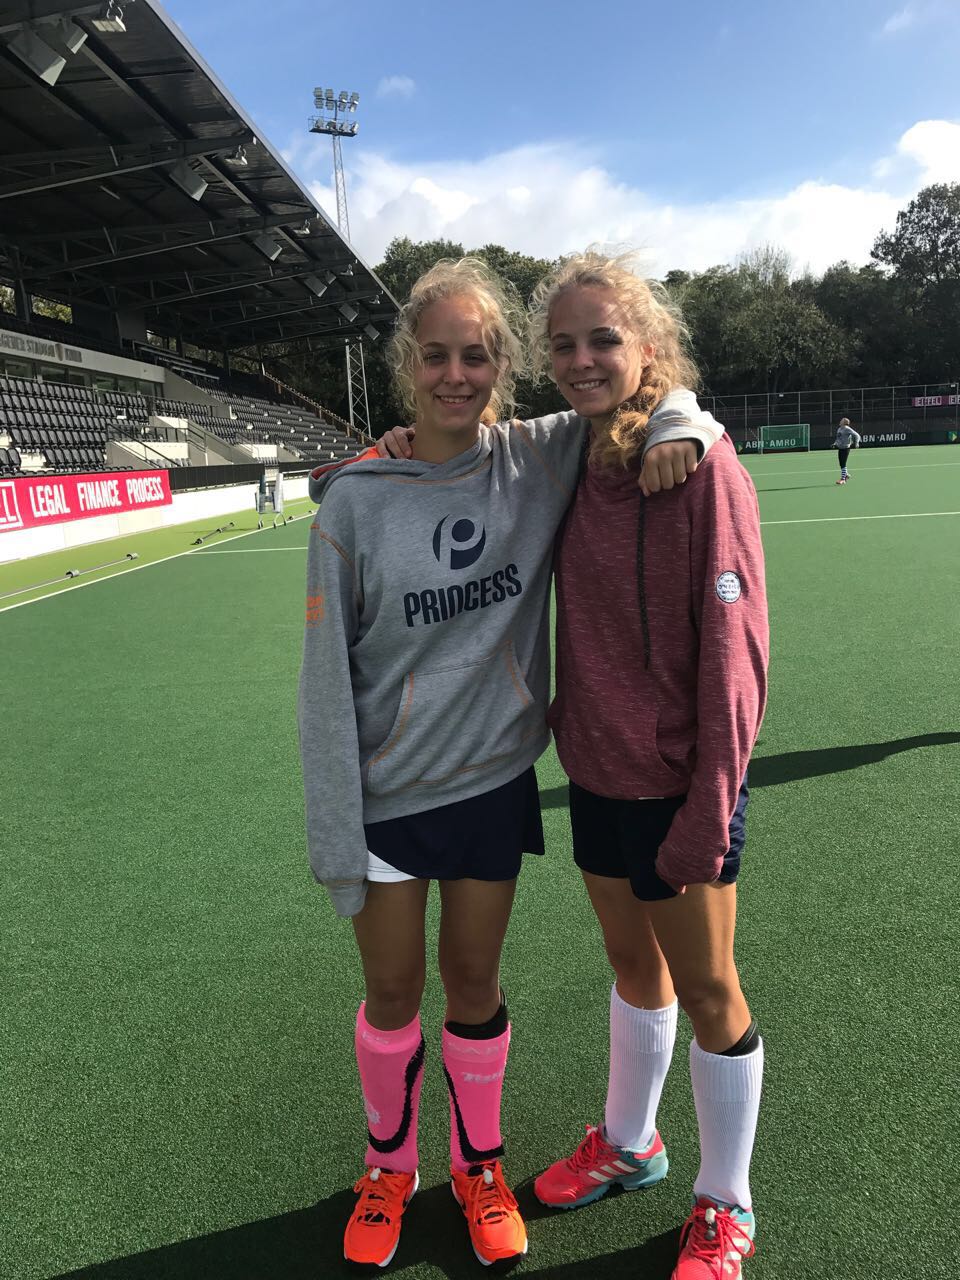 twins on main hockey field in Netherlands